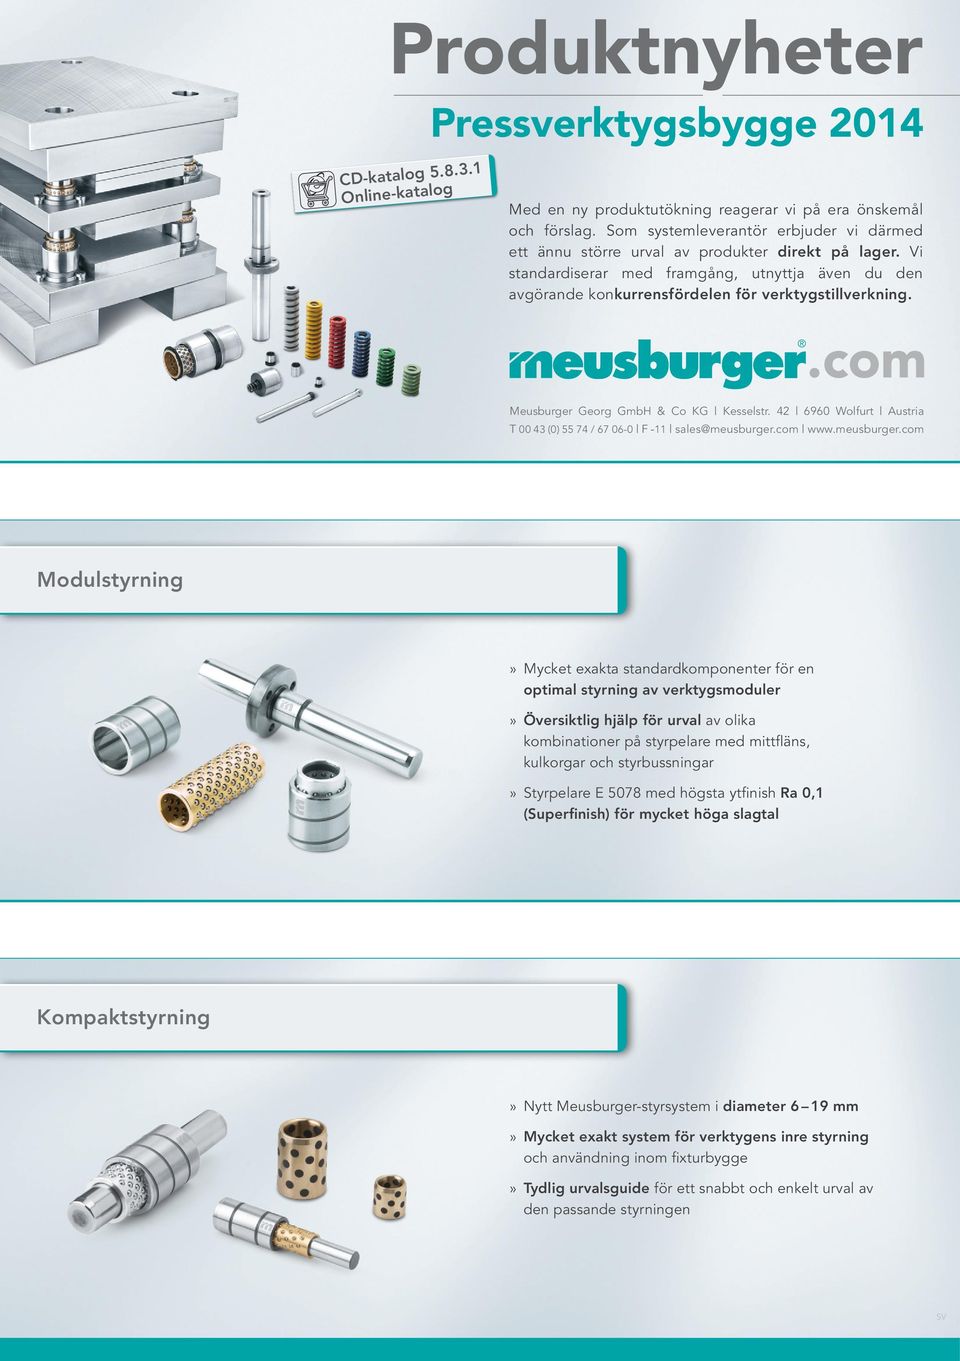 Meusburger Georg GmbH & Co KG Kesselstr. 42 6960 Wolfurt Austria T 00 43 43(0) (0)55 5574 74/ /67 6706-0 06-0 F F -11-11 verkauf@meusburger.